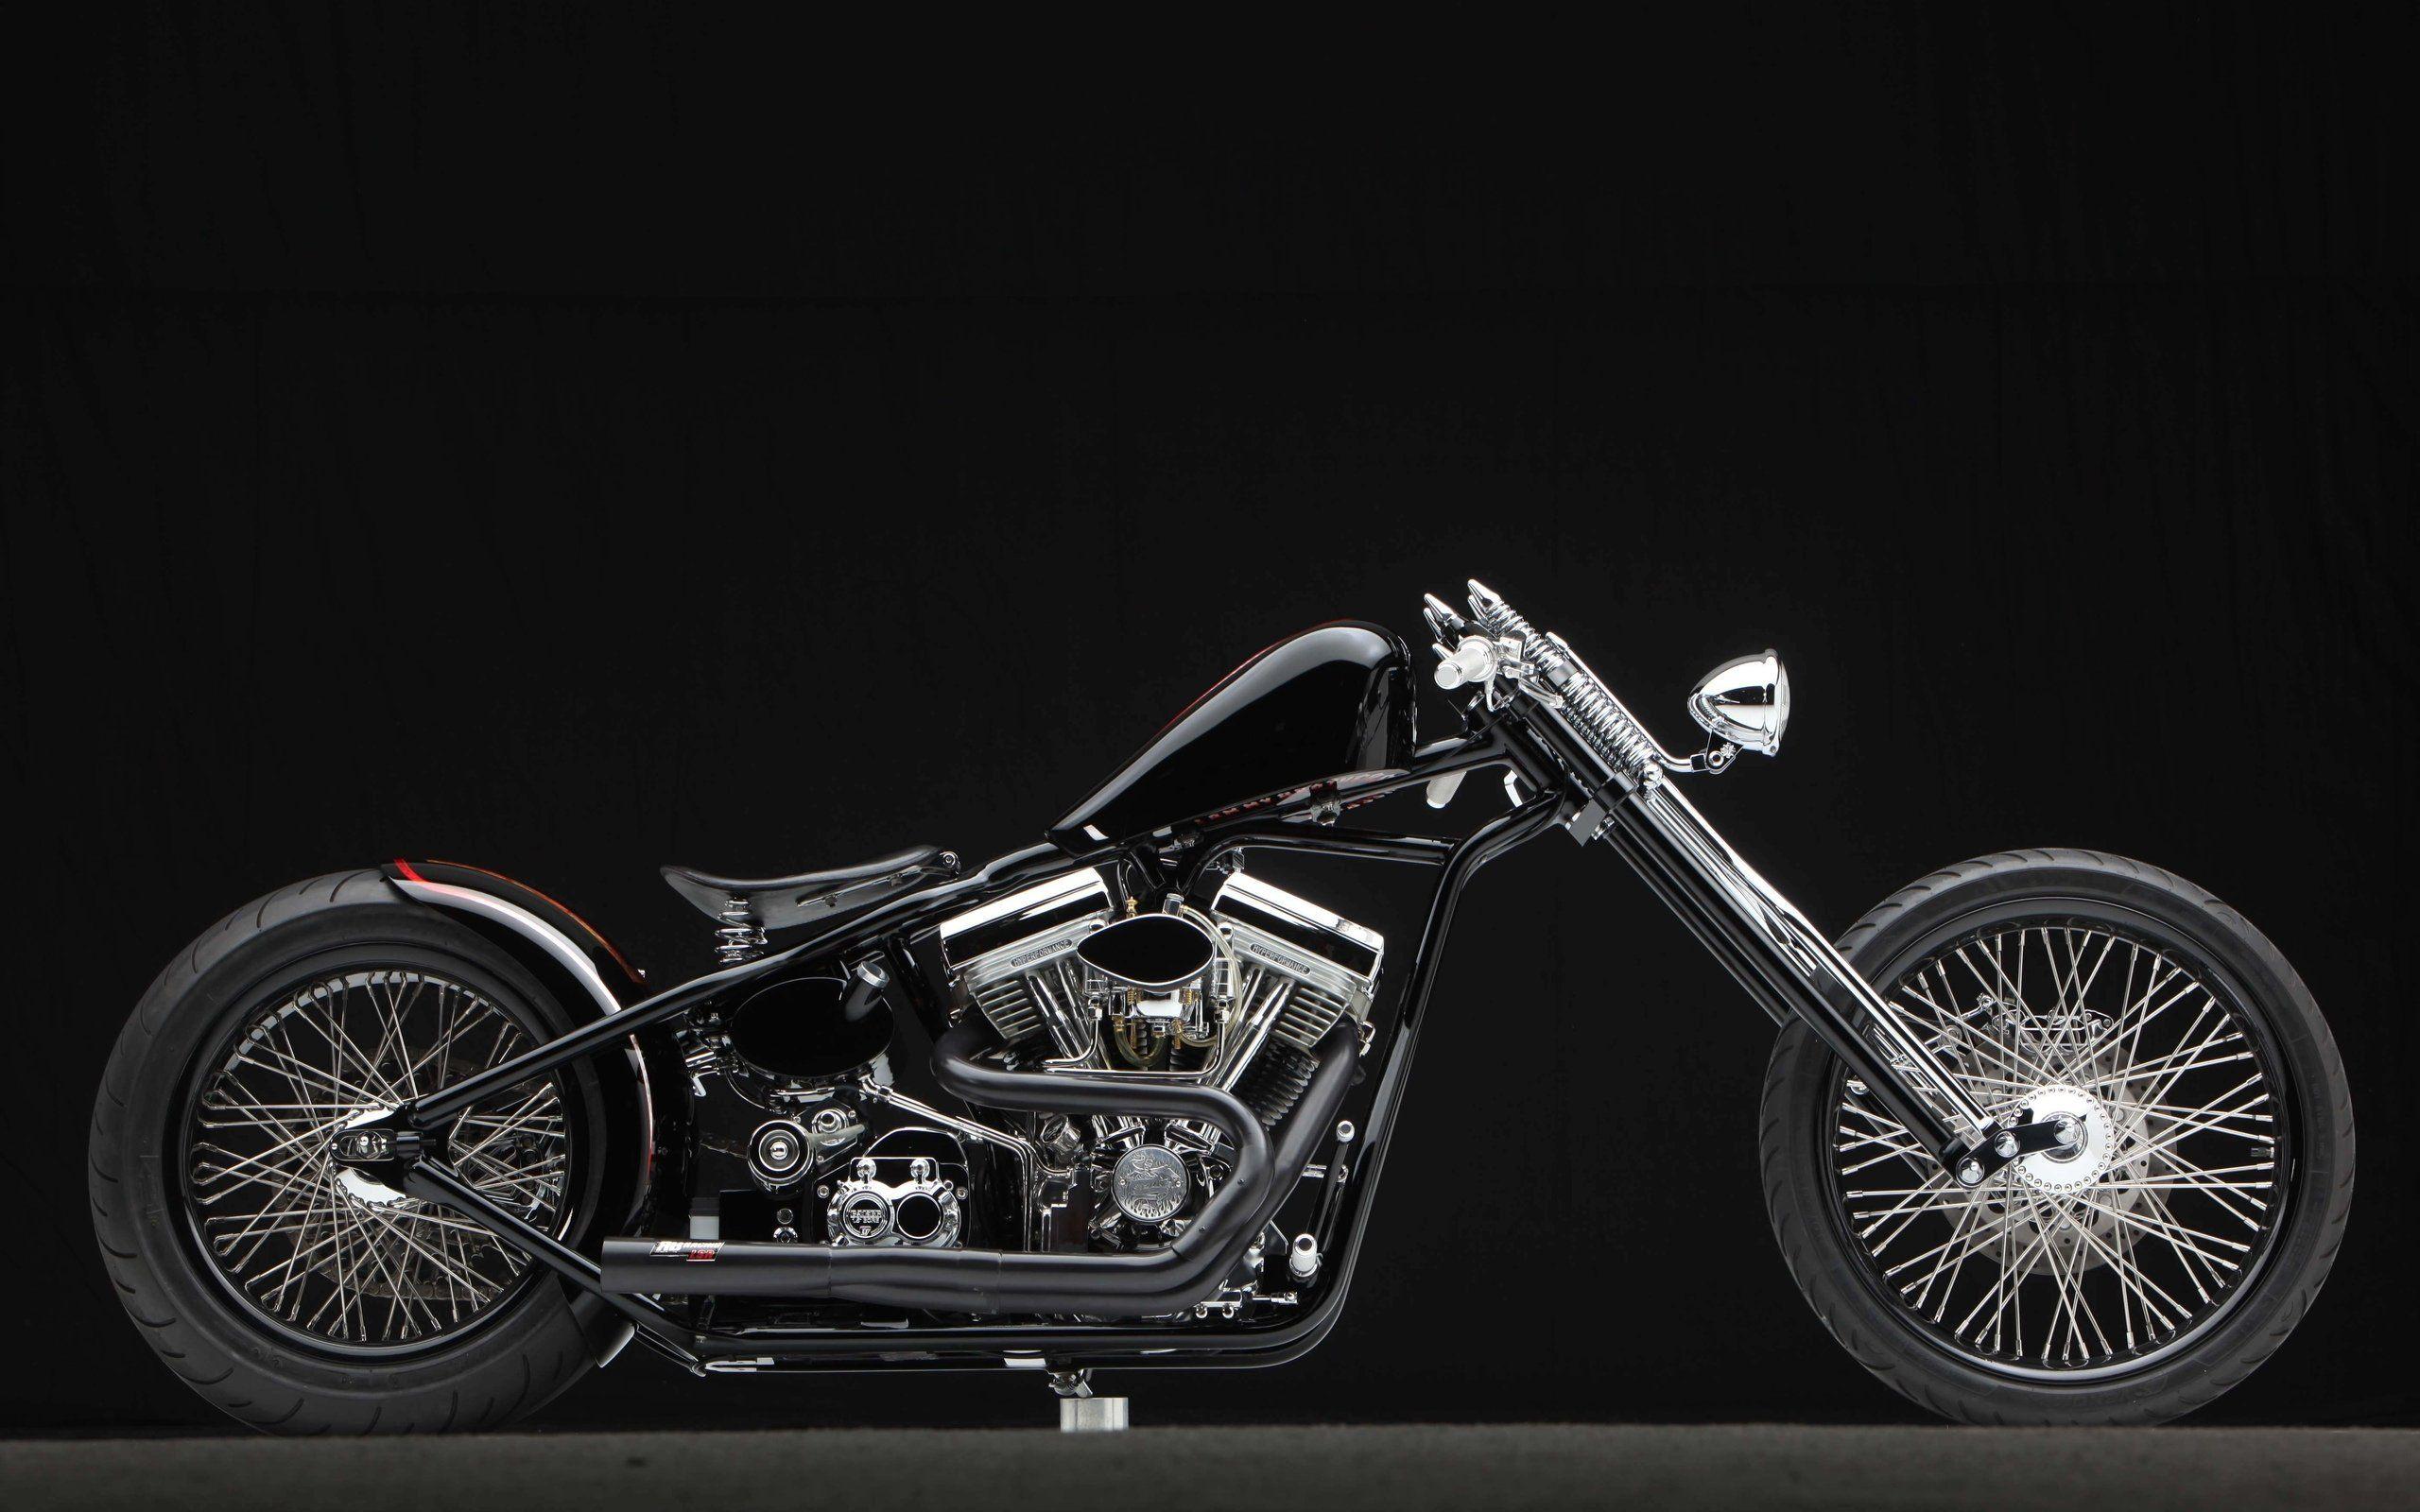 Wallpaper.wiki Custom Chopper Motorbike Bike Wallpaper Motorcycle